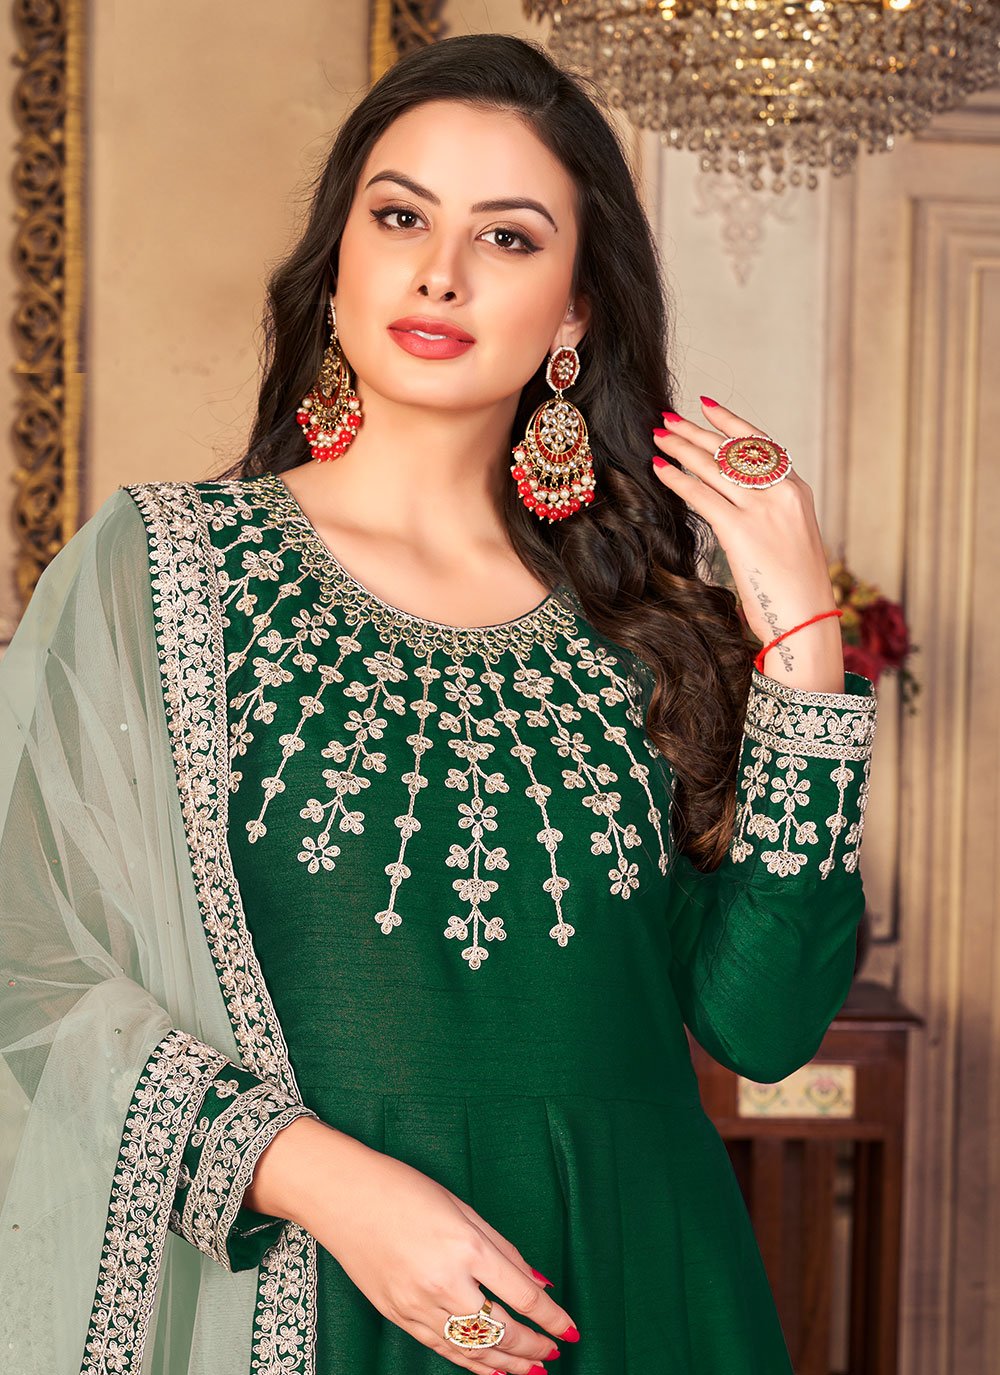 Salwar Suit Art Silk Green Embroidered Salwar Kameez